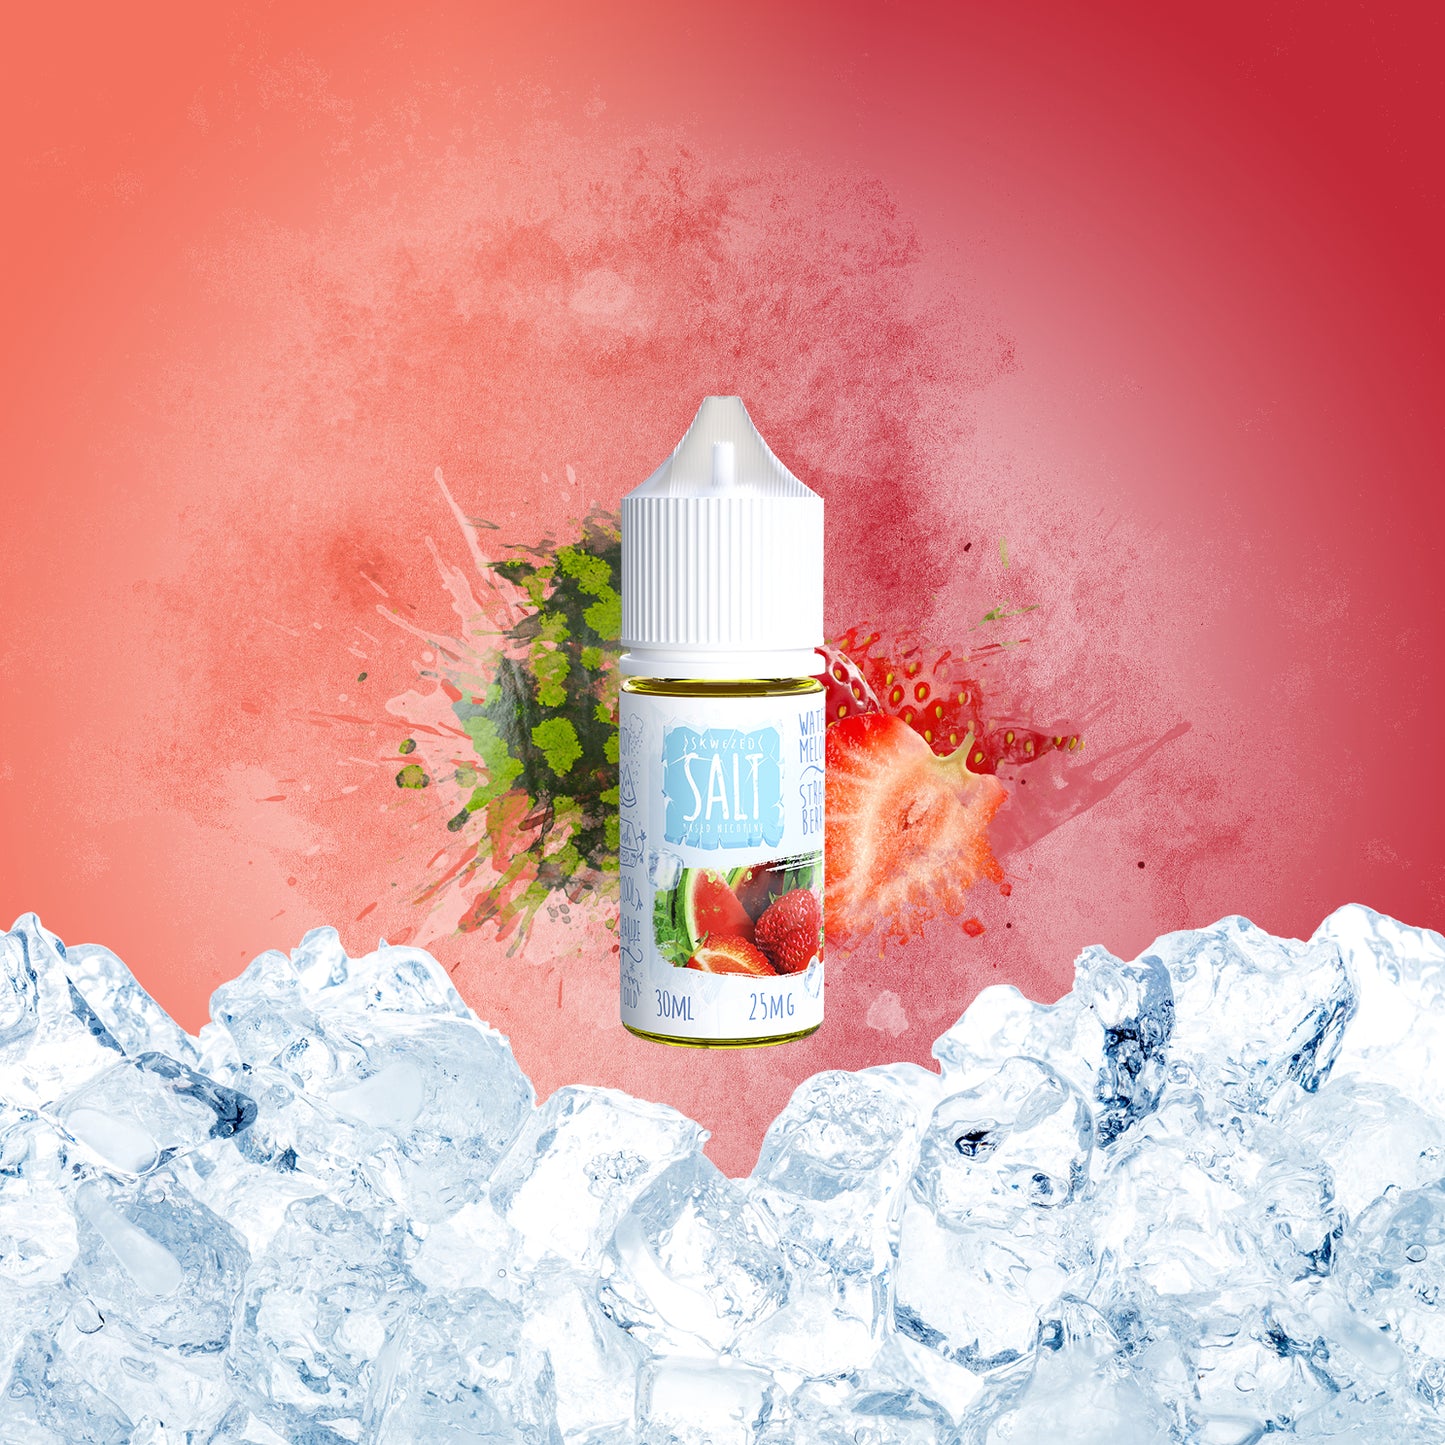 30ml - Skwezed Ice Salt Mix - Watermelon Strawberry ICE